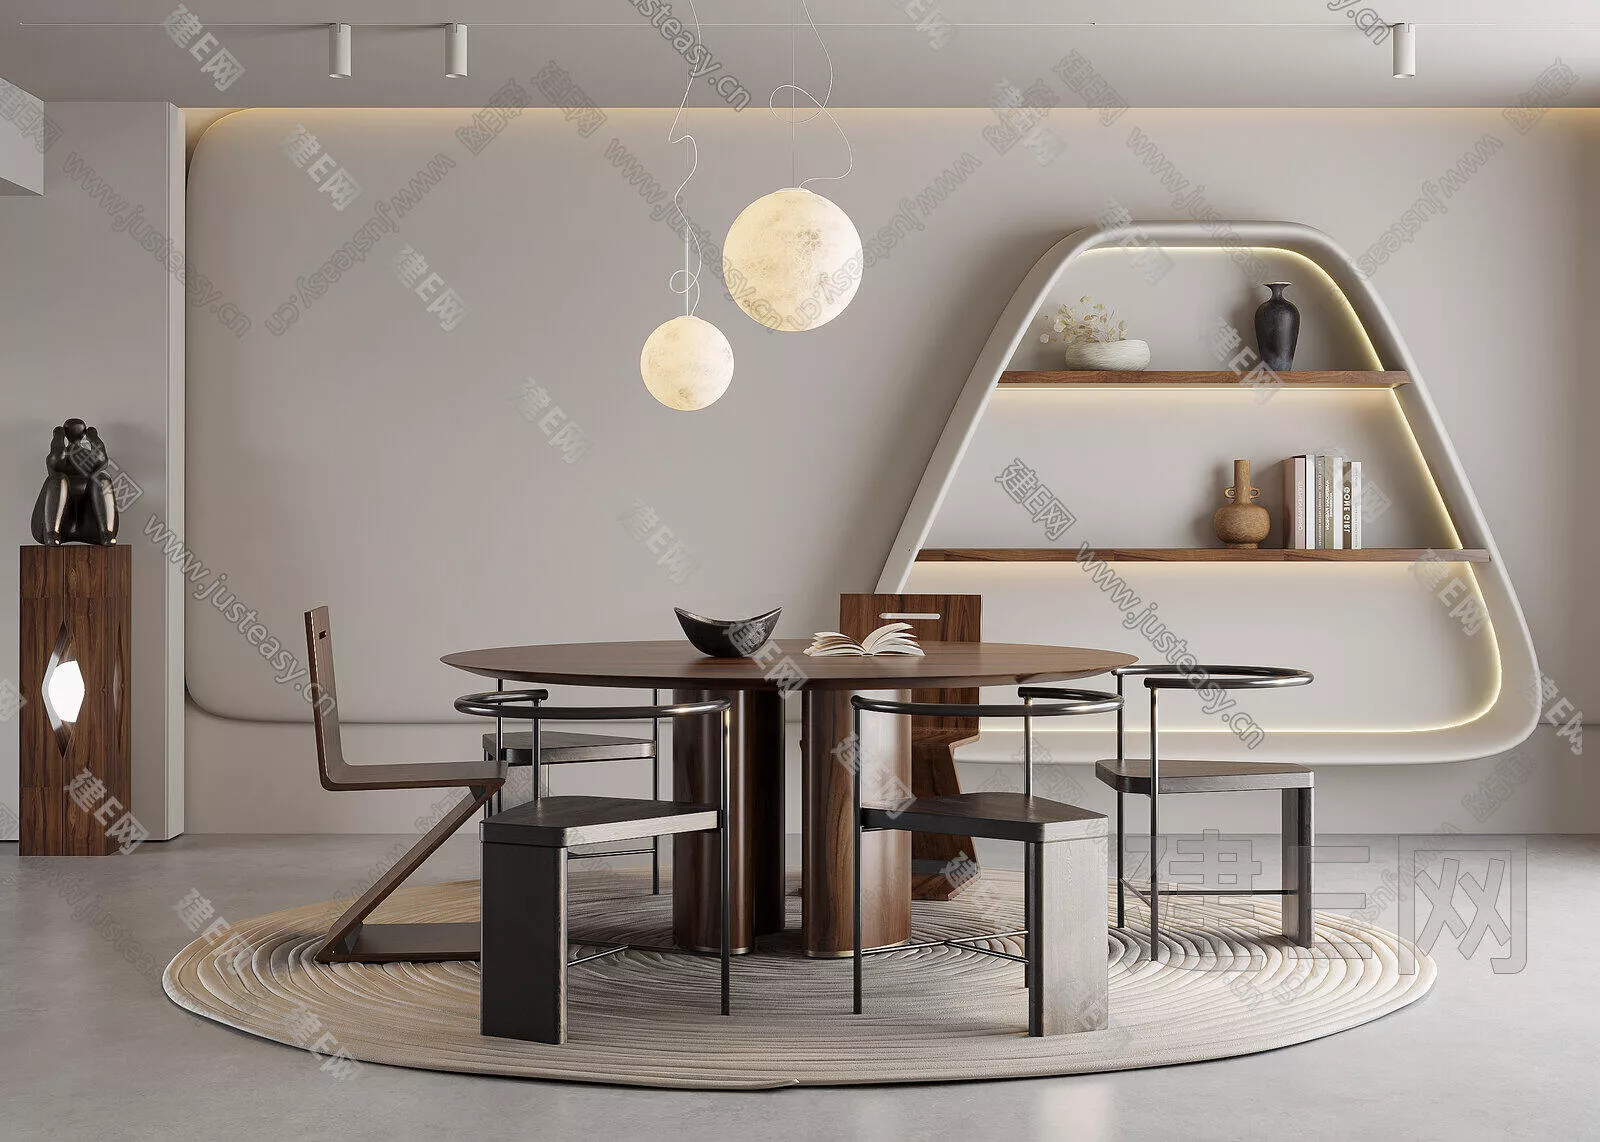 MODERN DINING TABLE SET - SKETCHUP 3D MODEL - ENSCAPE - 101273036